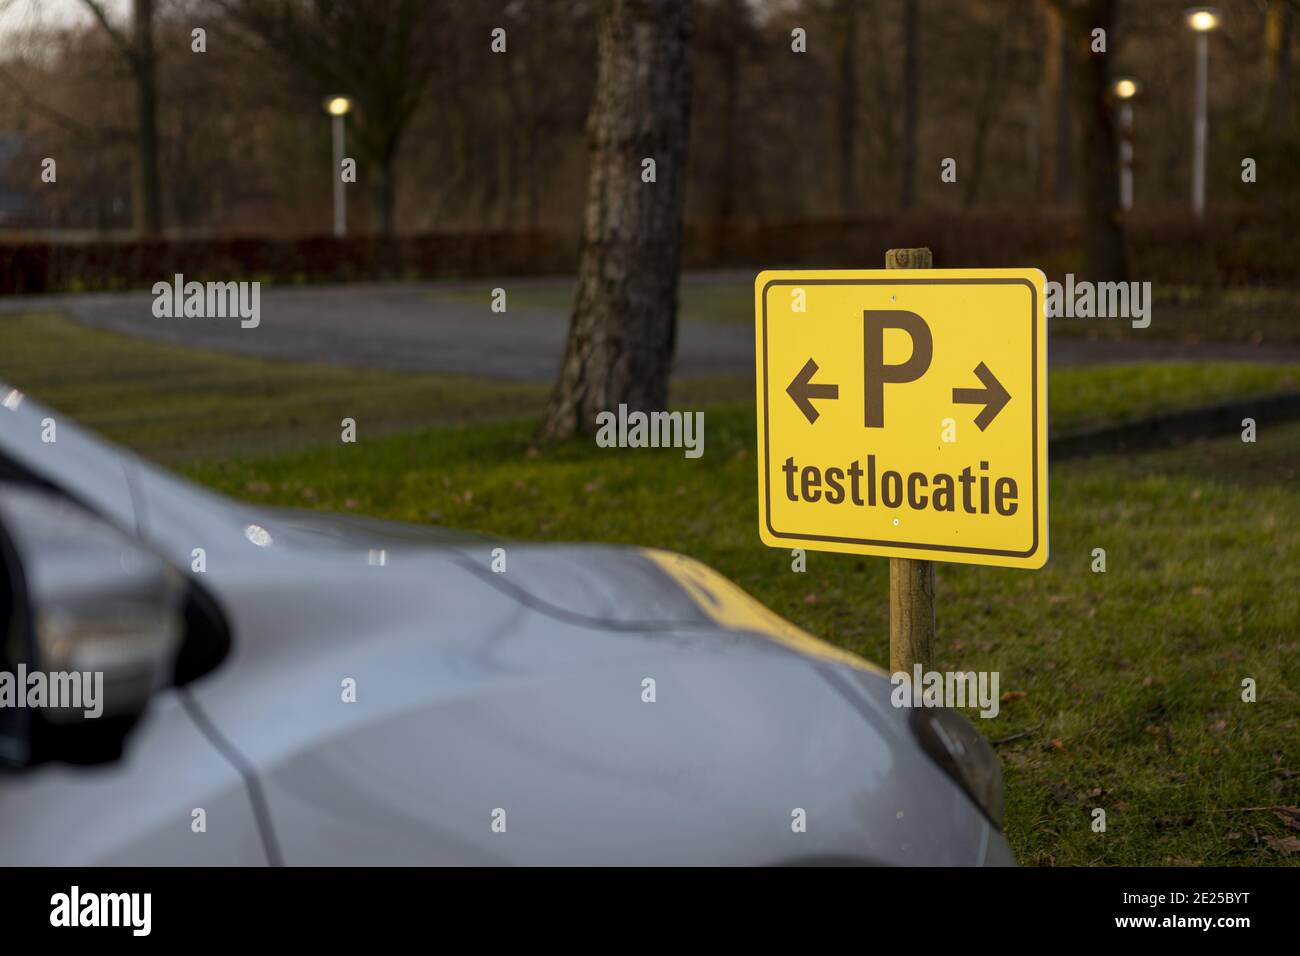 ZUTPHEN, PAESI BASSI - 01 gennaio 2021: Auto parcheggiata nel parcheggio con un cartello che indica che è riservata ai visitatori della sede di test COVID-19 Foto Stock